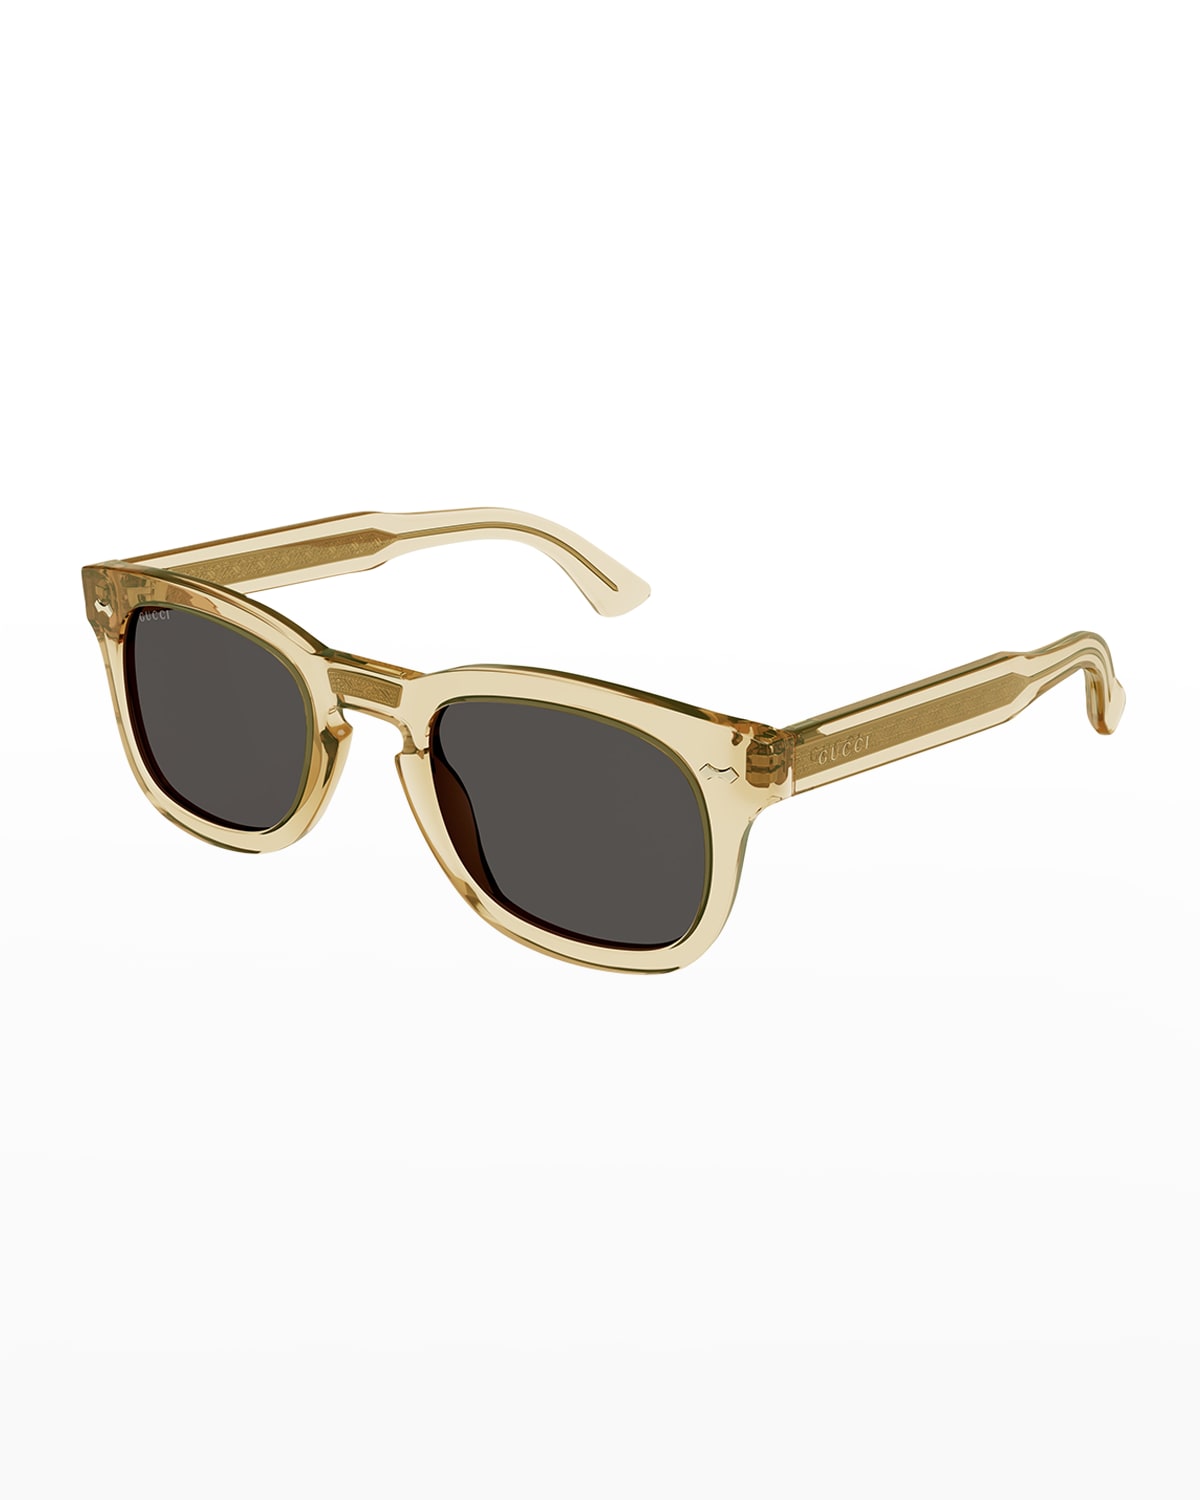 Gucci Men's Square Acetate Sunglasses | Neiman Marcus